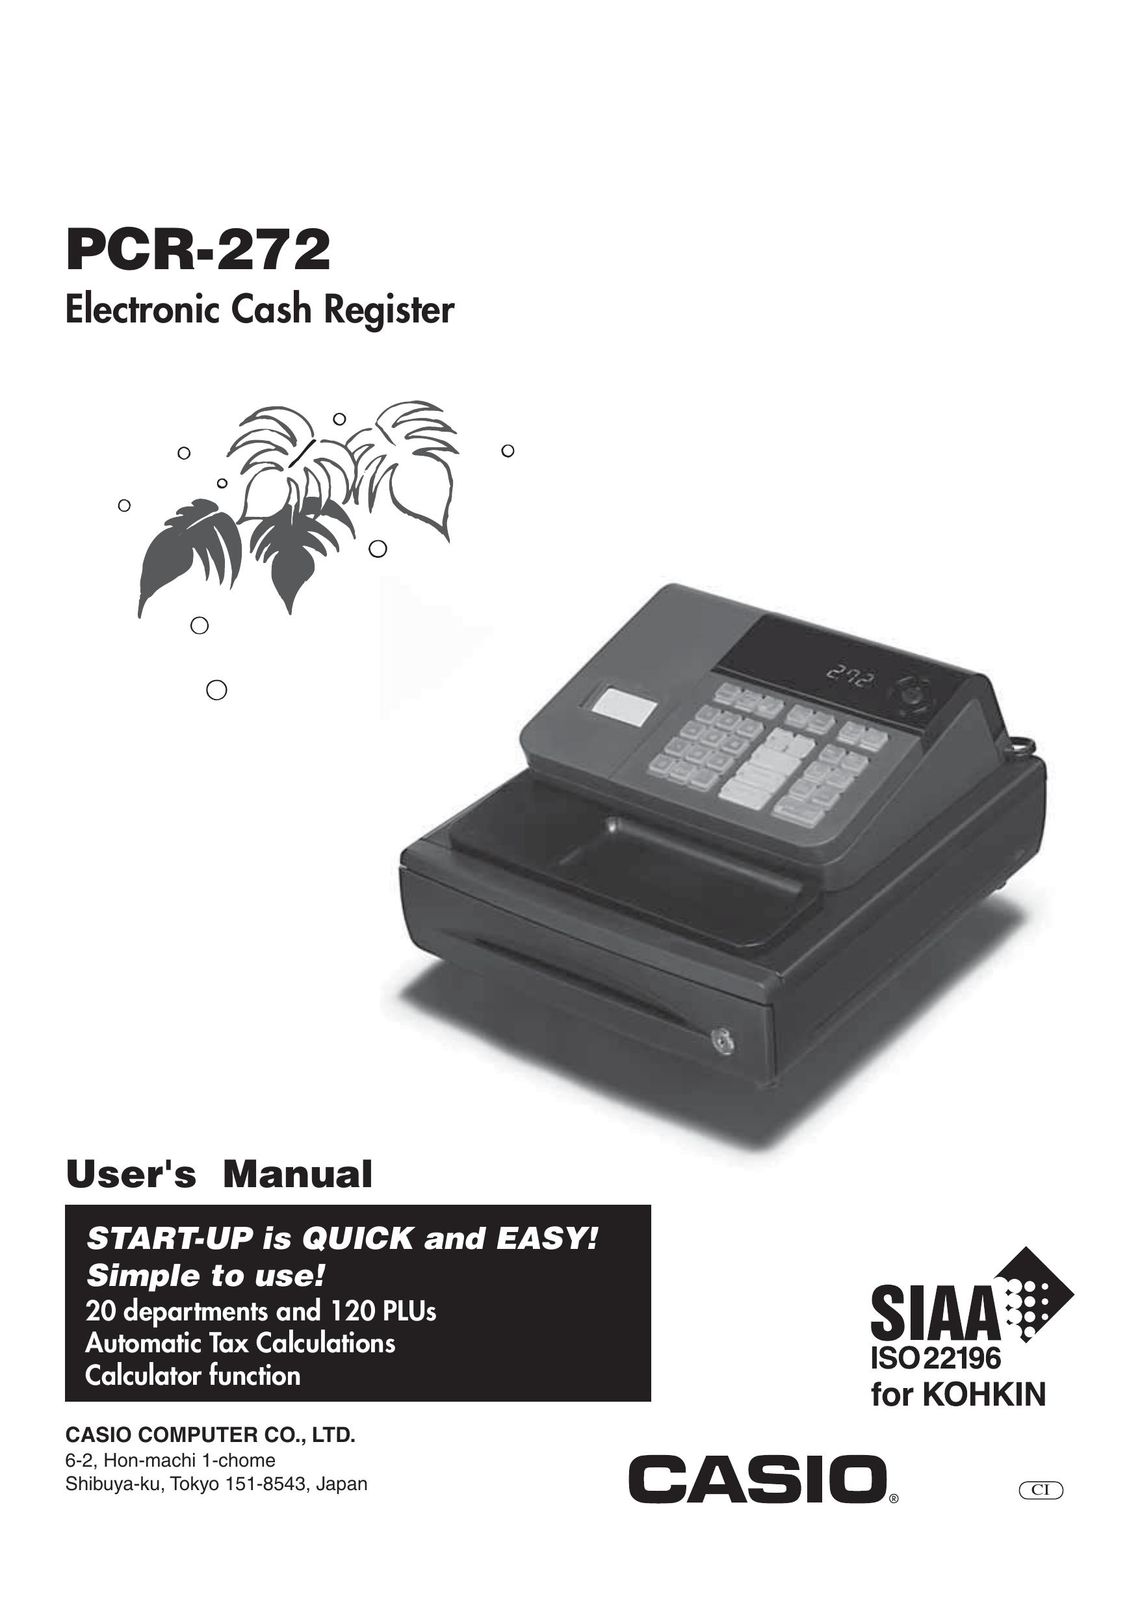 Casio PCR-272 Cash Register User Manual